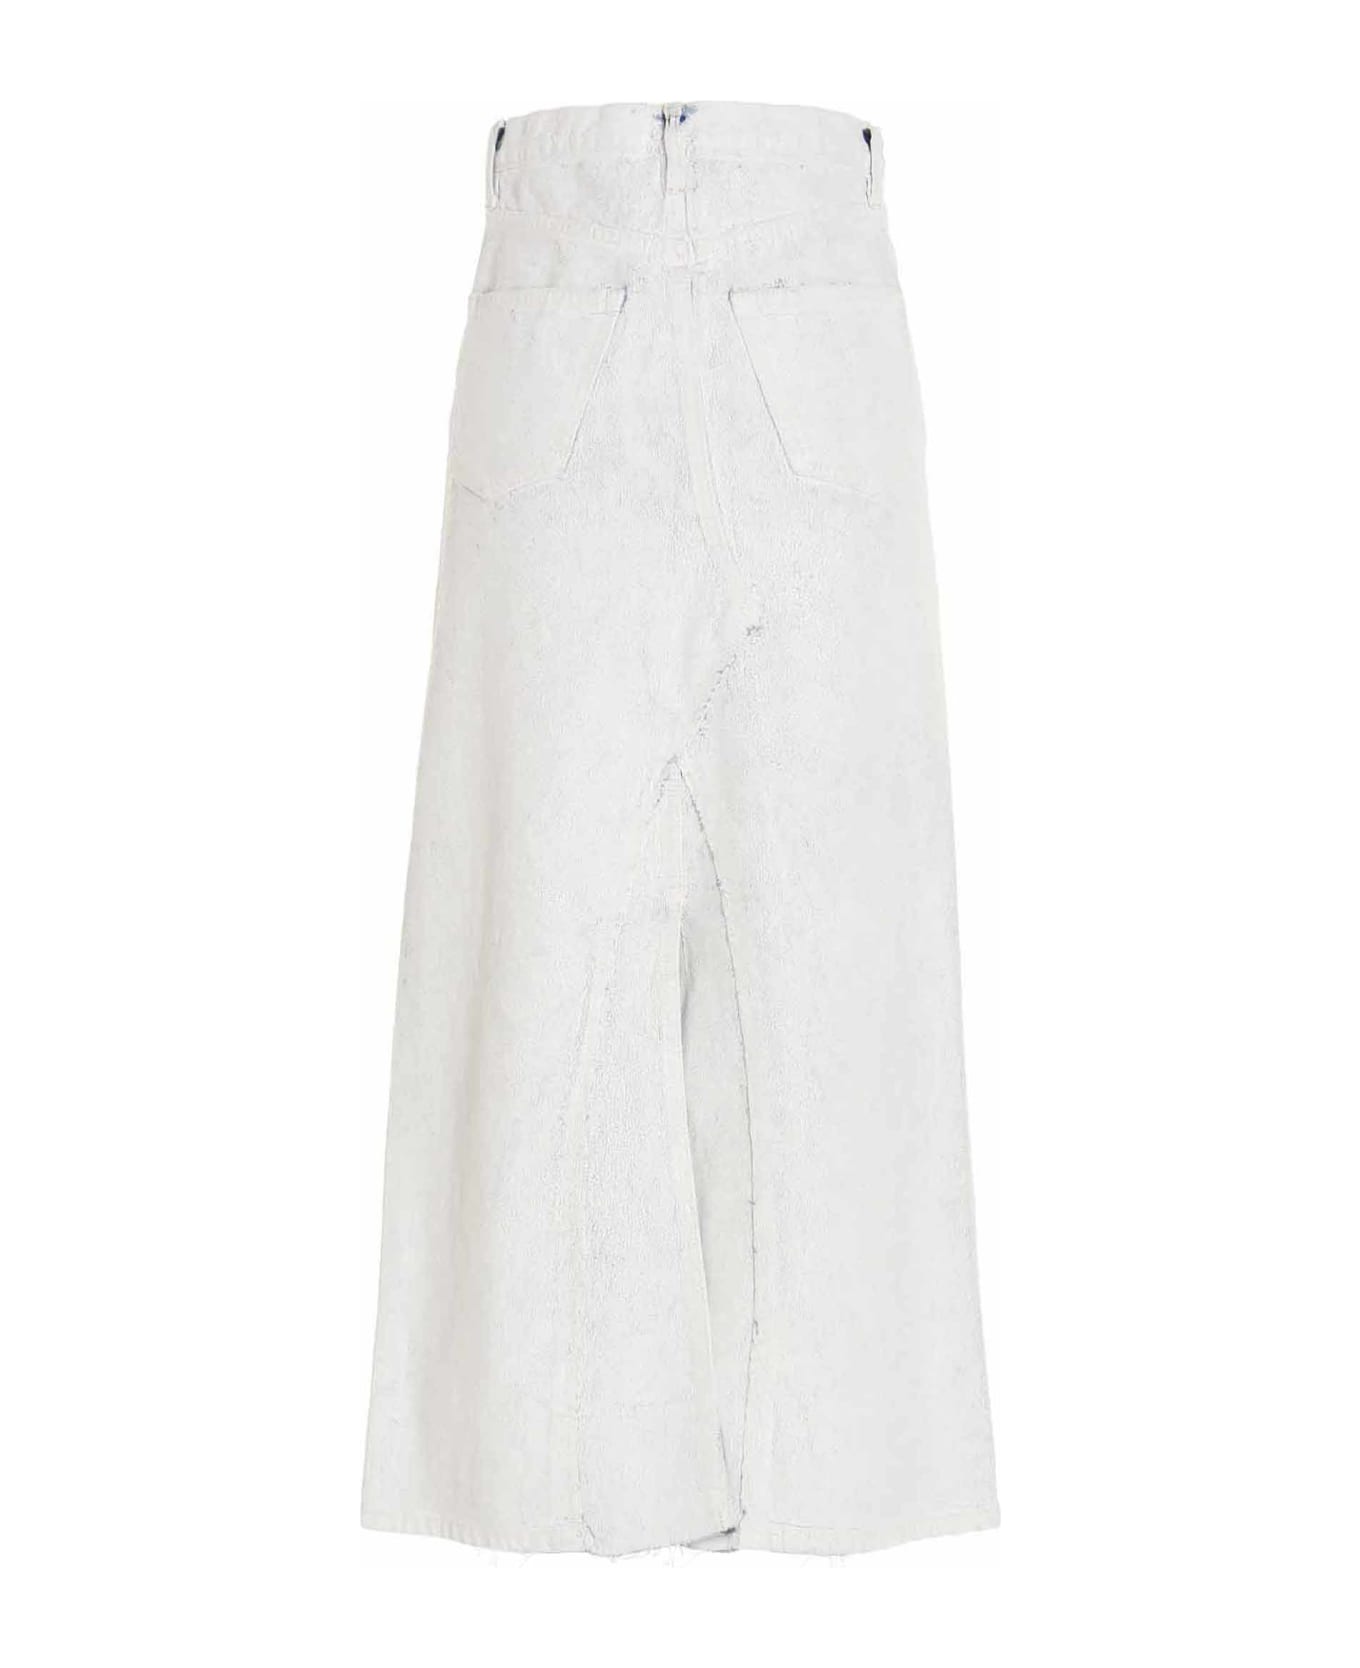 Maison Margiela Denim Cotton Skirt - White スカート